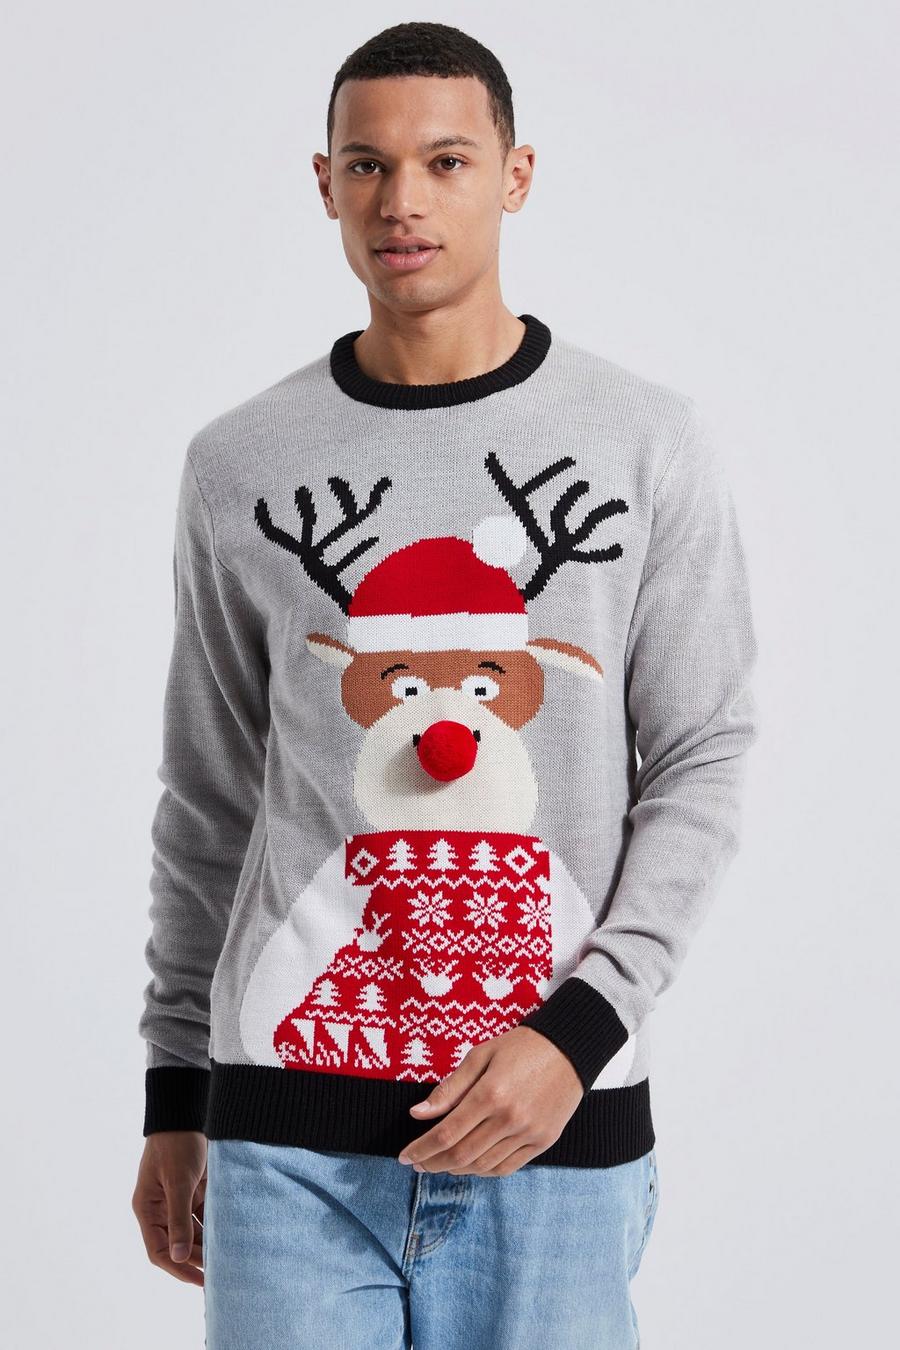 Jersey Tall navideño con estampado de reno con gorro de Papá Noel, Grey marl